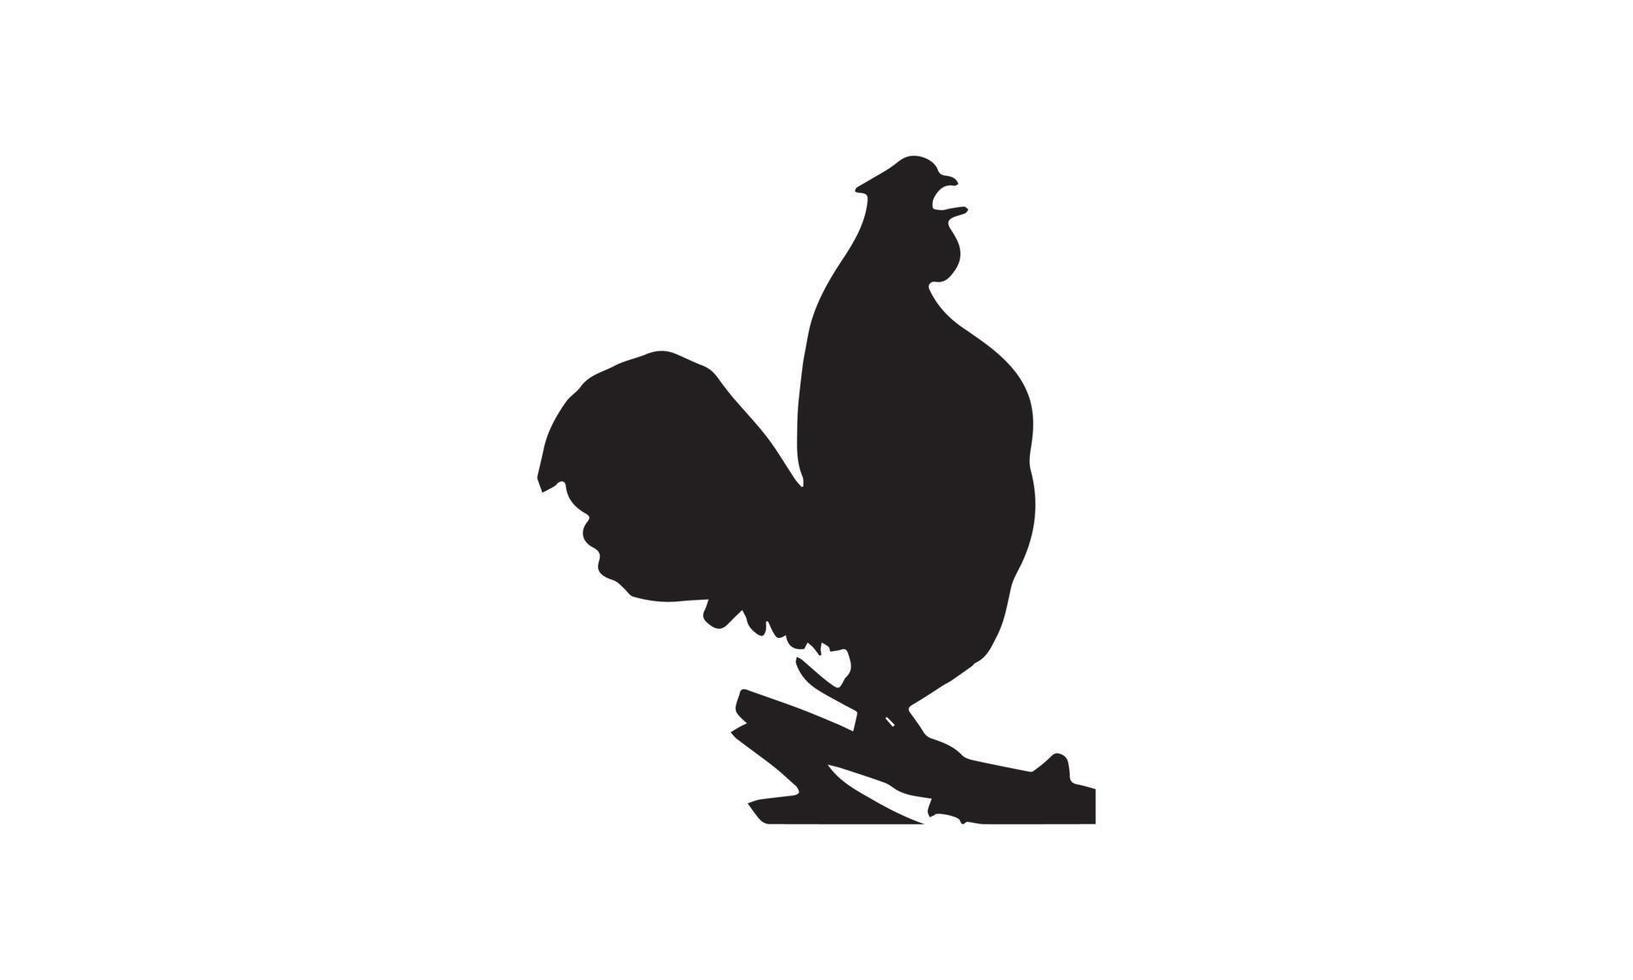 diseño de ilustración de vector de pollo en blanco y negro